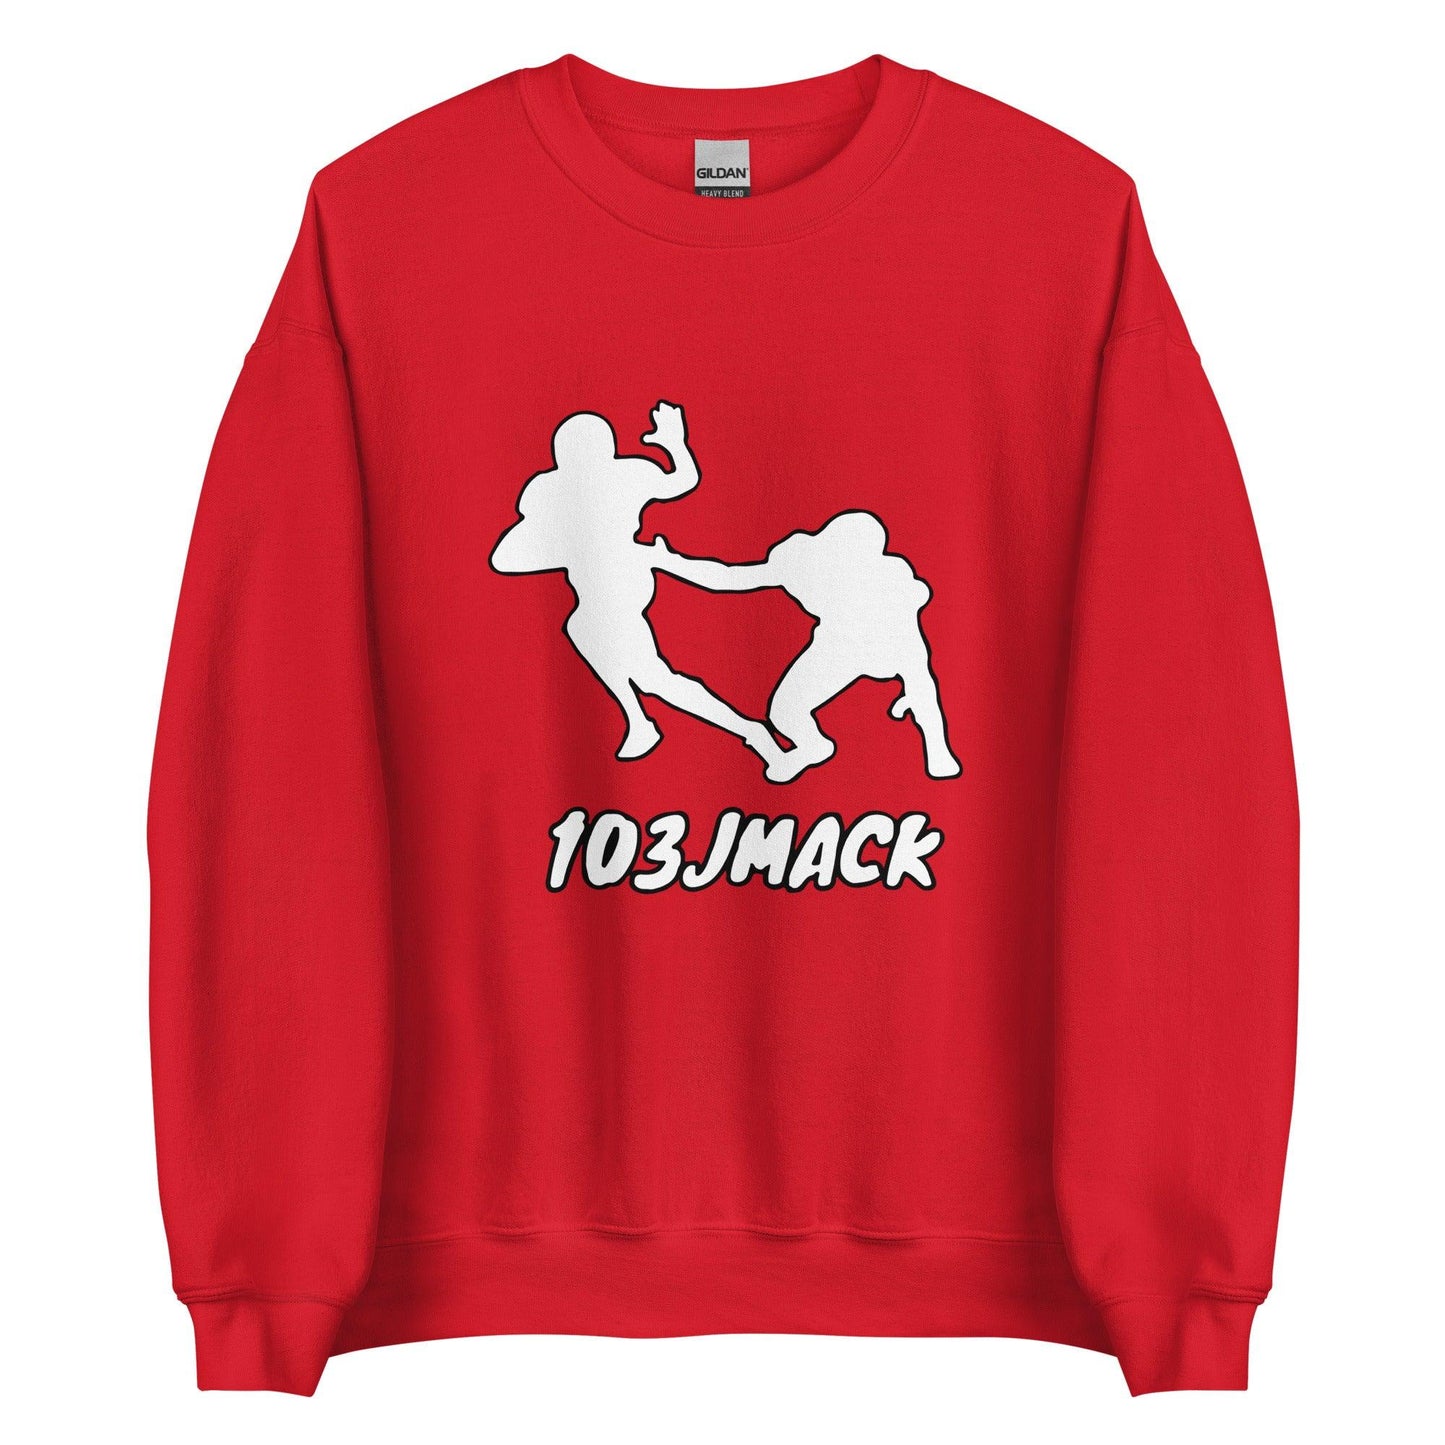 Jaylin Mack "White Out" Sweatshirt - Fan Arch